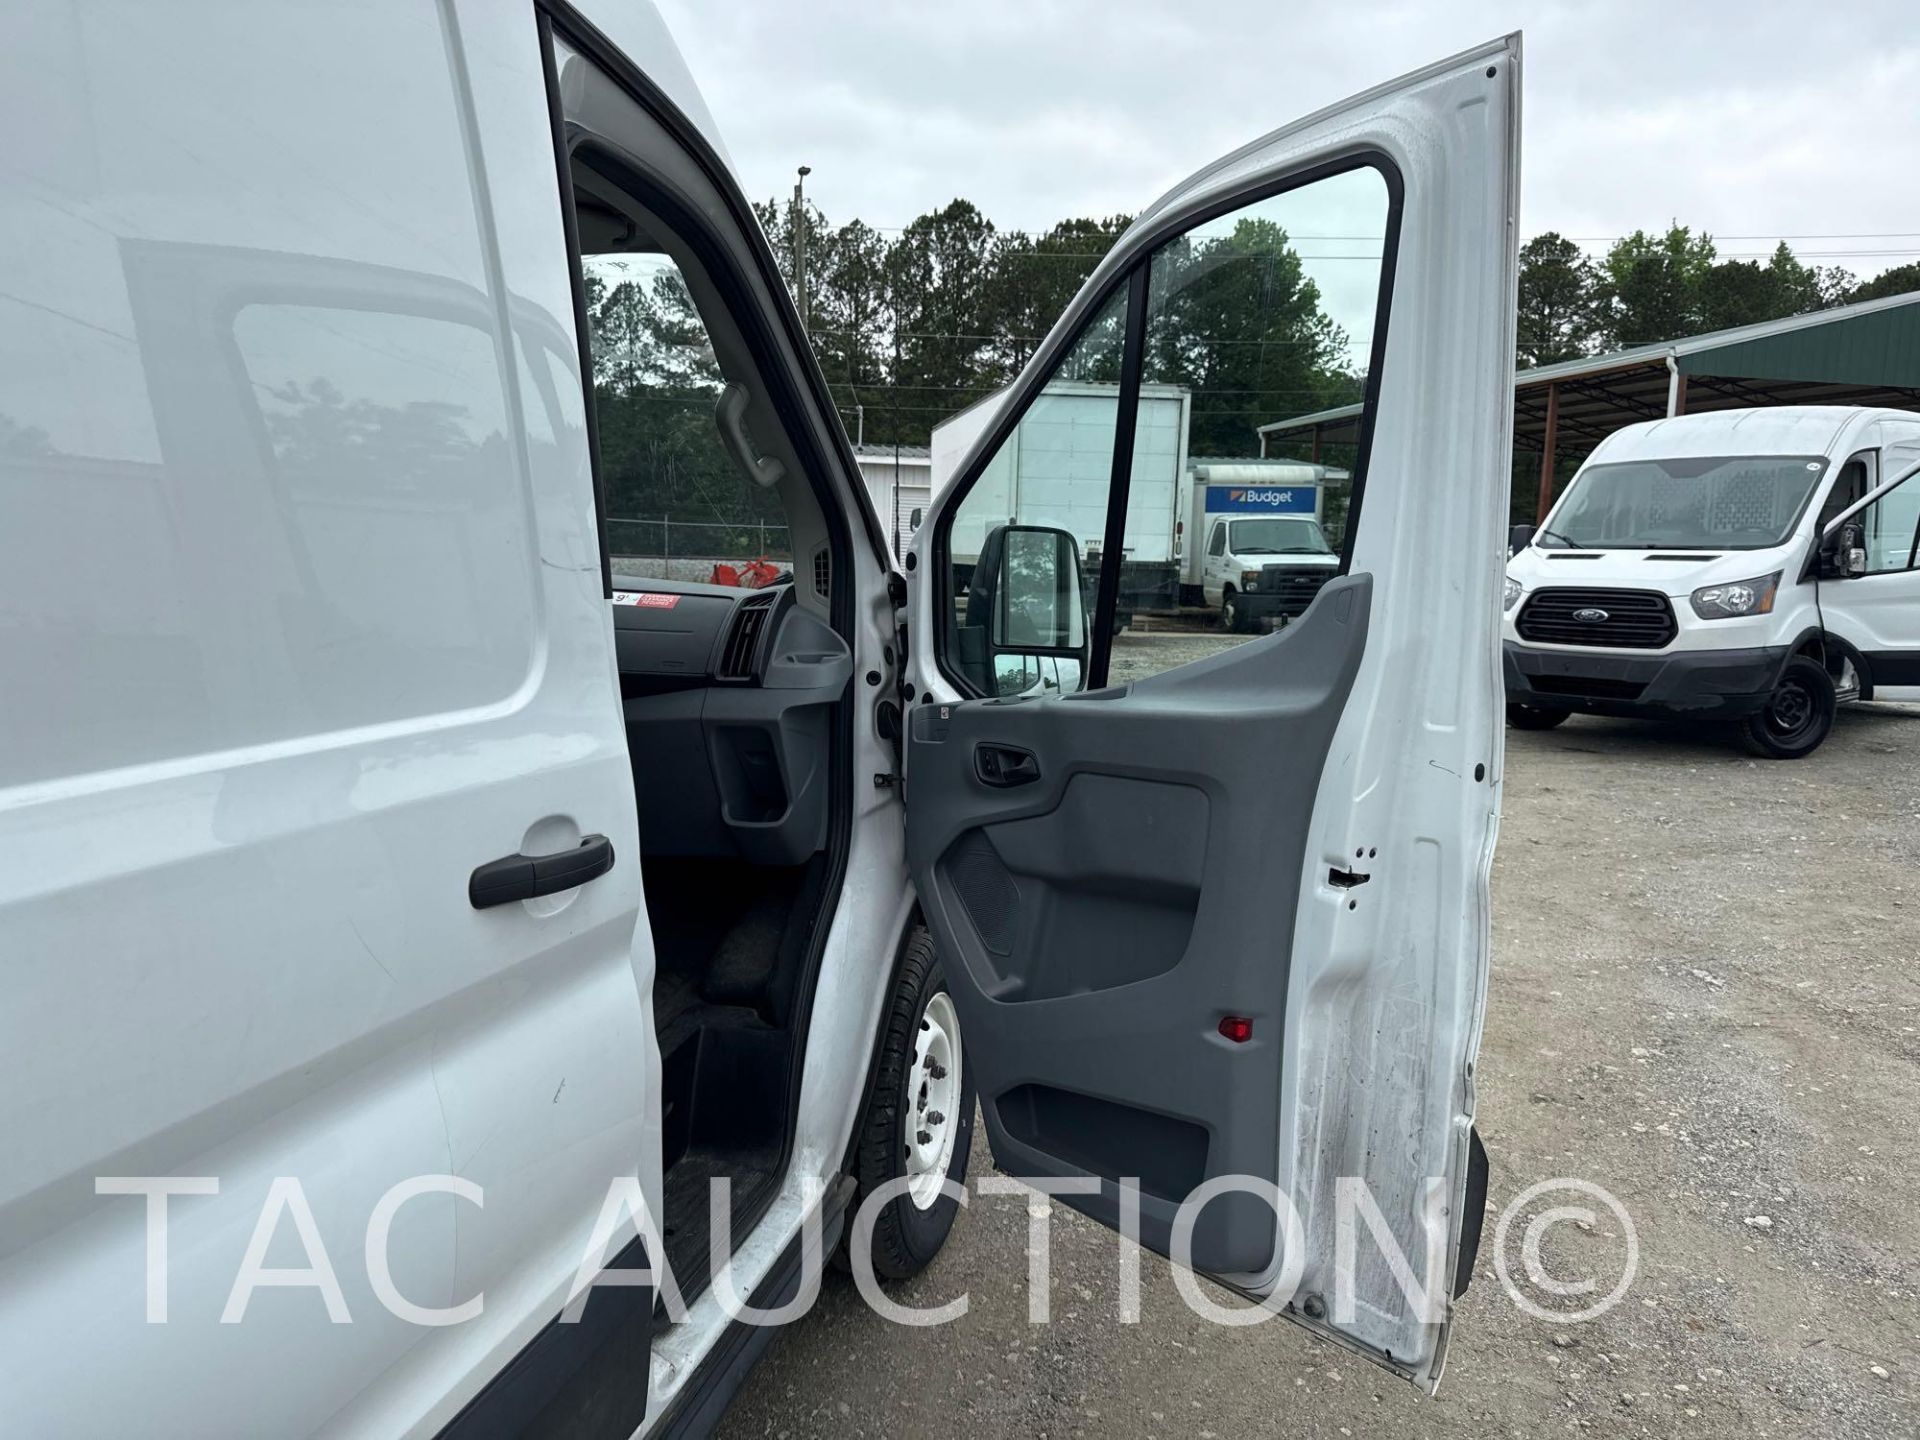 2019 Ford Transit 150 Cargo Van - Image 18 of 41